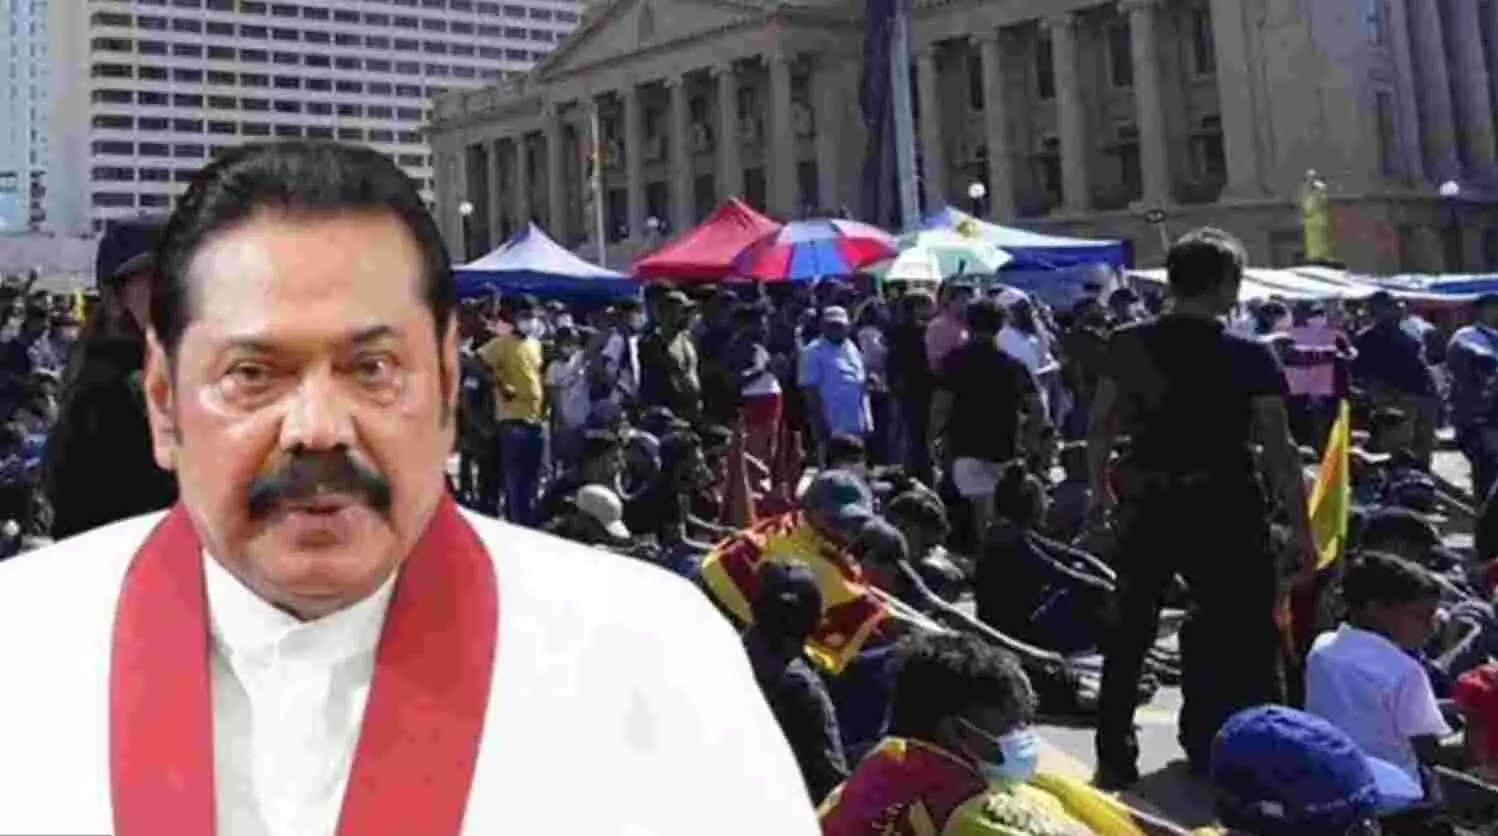 Sri Lanka crisis: आर्थिक संकट और हिंसा के बीच श्रीलंका के PM महिंदा राजपक्षे ने दिया इस्तीफा, पूरे देश में लगाया गया है कर्फ्यू